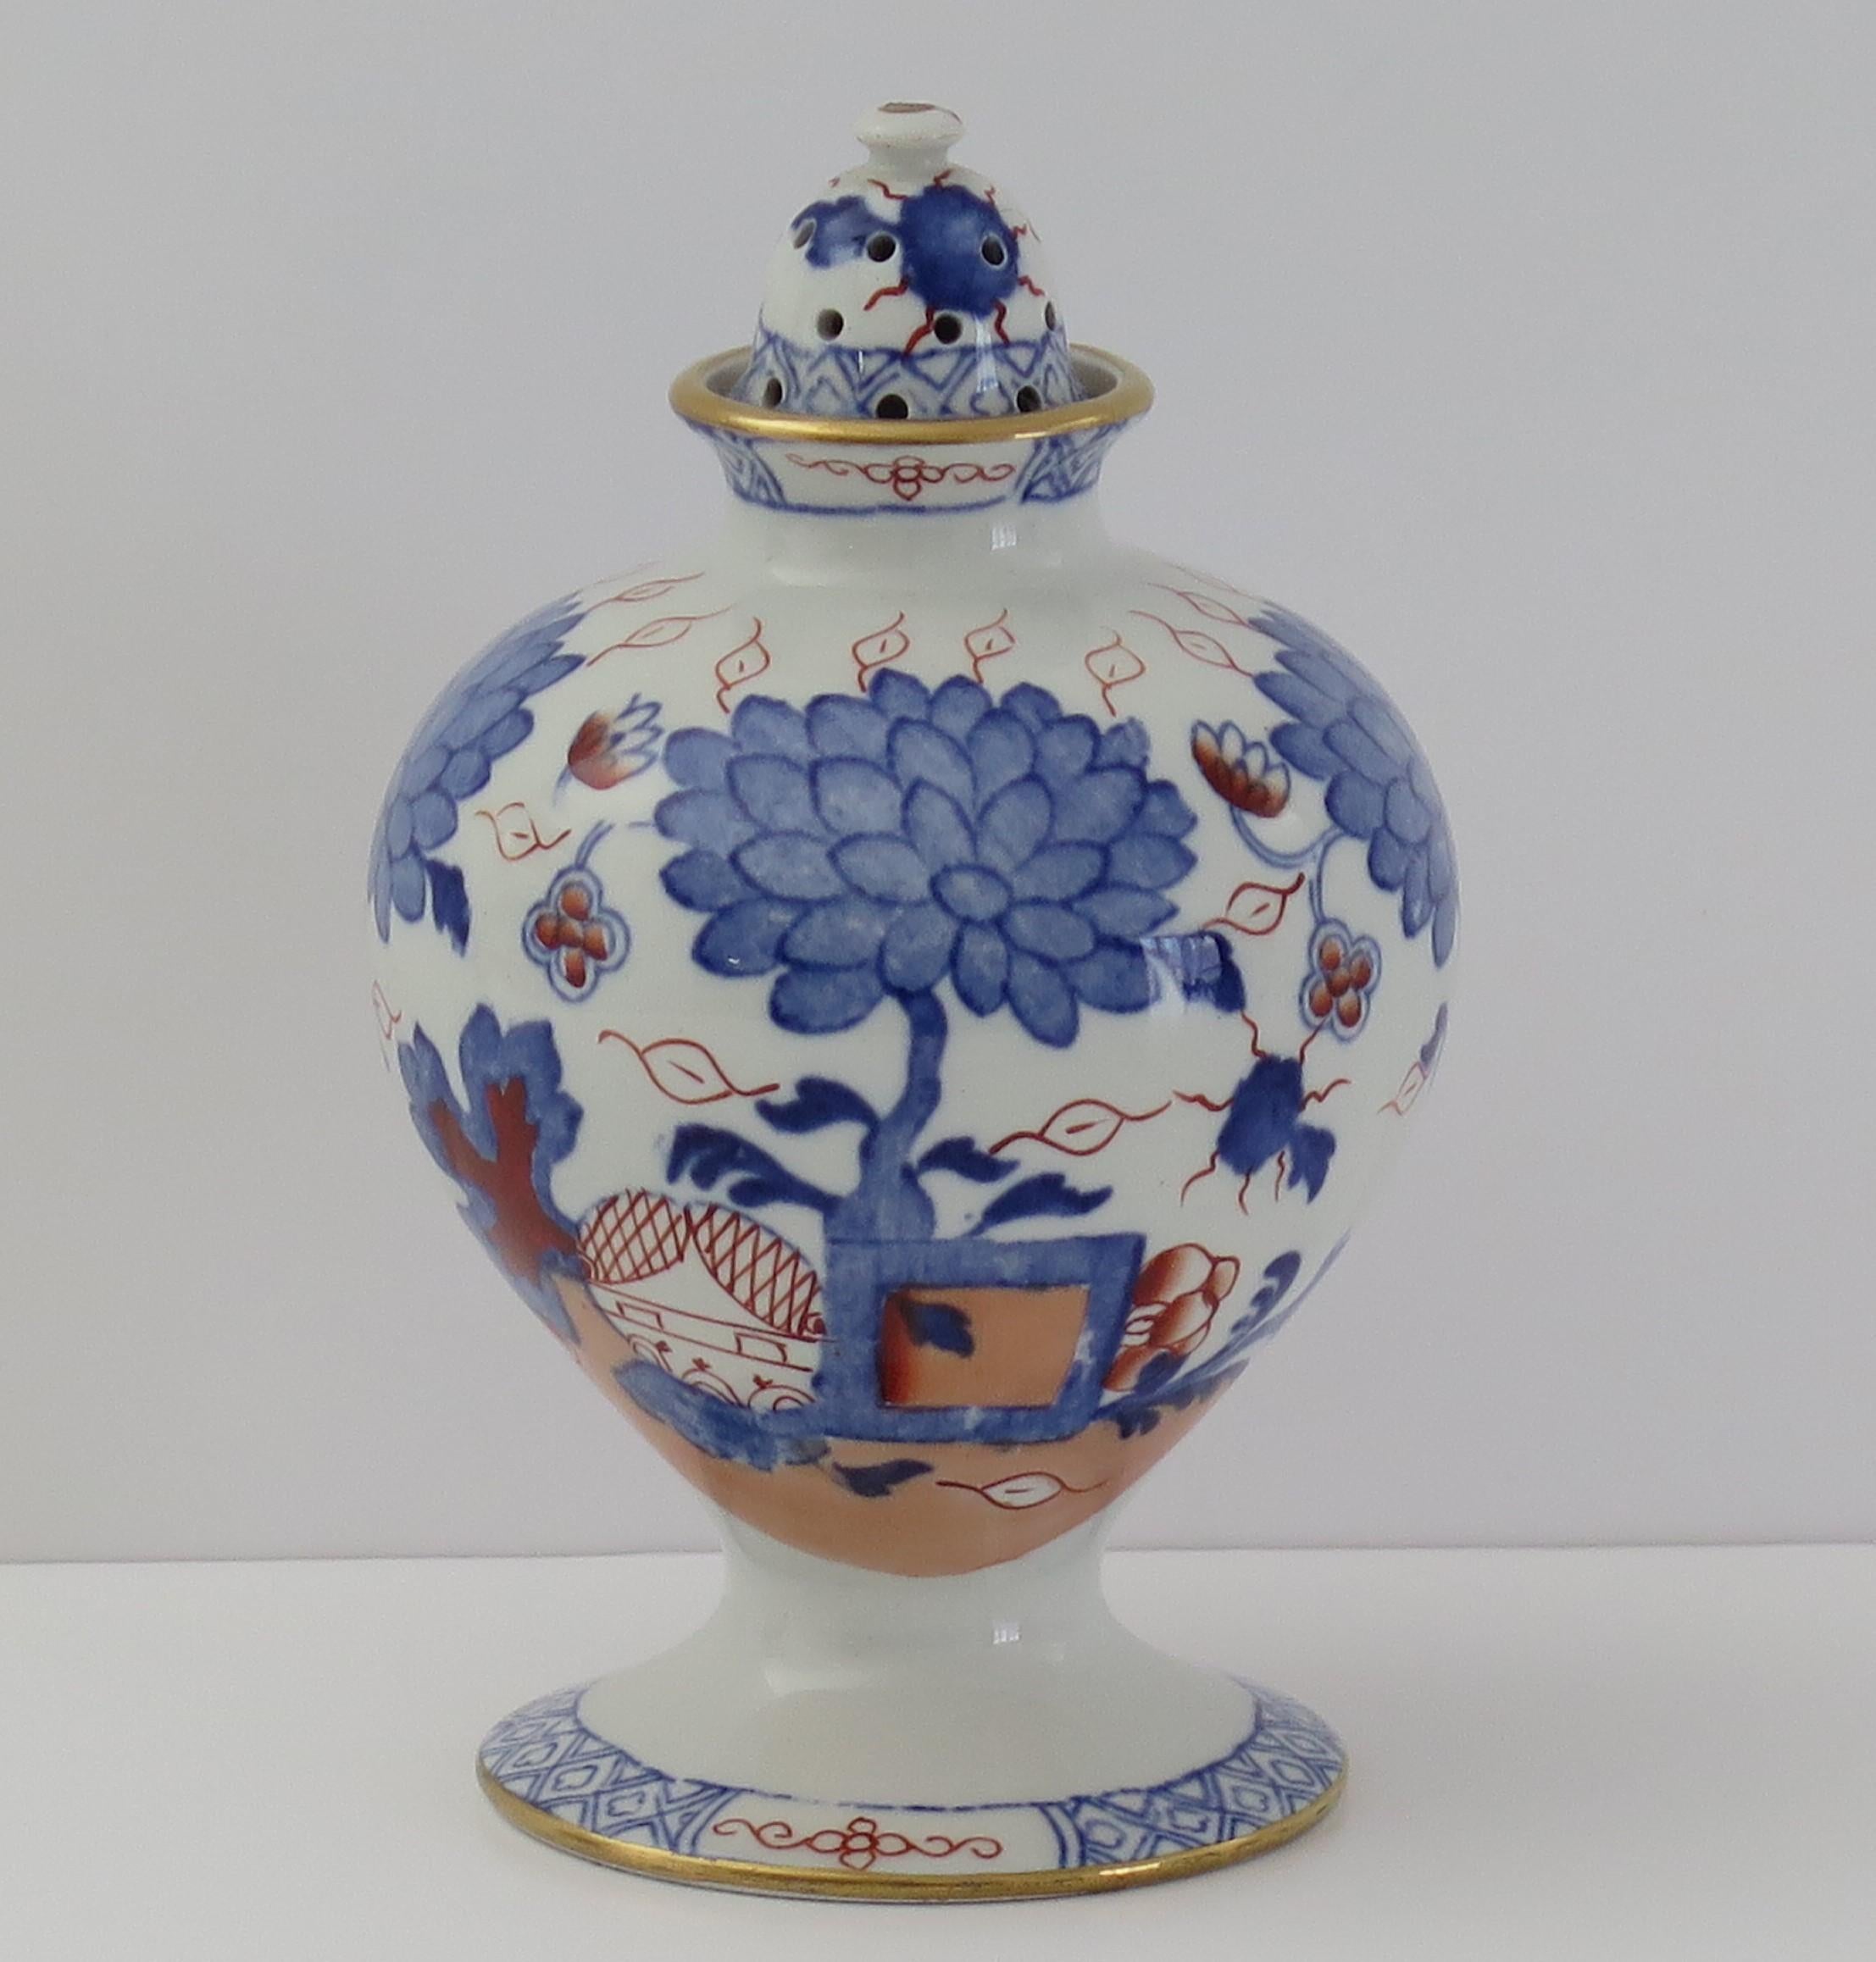 Il s'agit d'un rare vase Pot-Pourri et couvercle, peint à la main dans le motif Jardiniere, fabriqué par Mason's Ironstone, Lane's, Angleterre et datant d'environ 1890.

Il s'agit d'une pièce rare, présentée sous la forme d'un vase globulaire à col